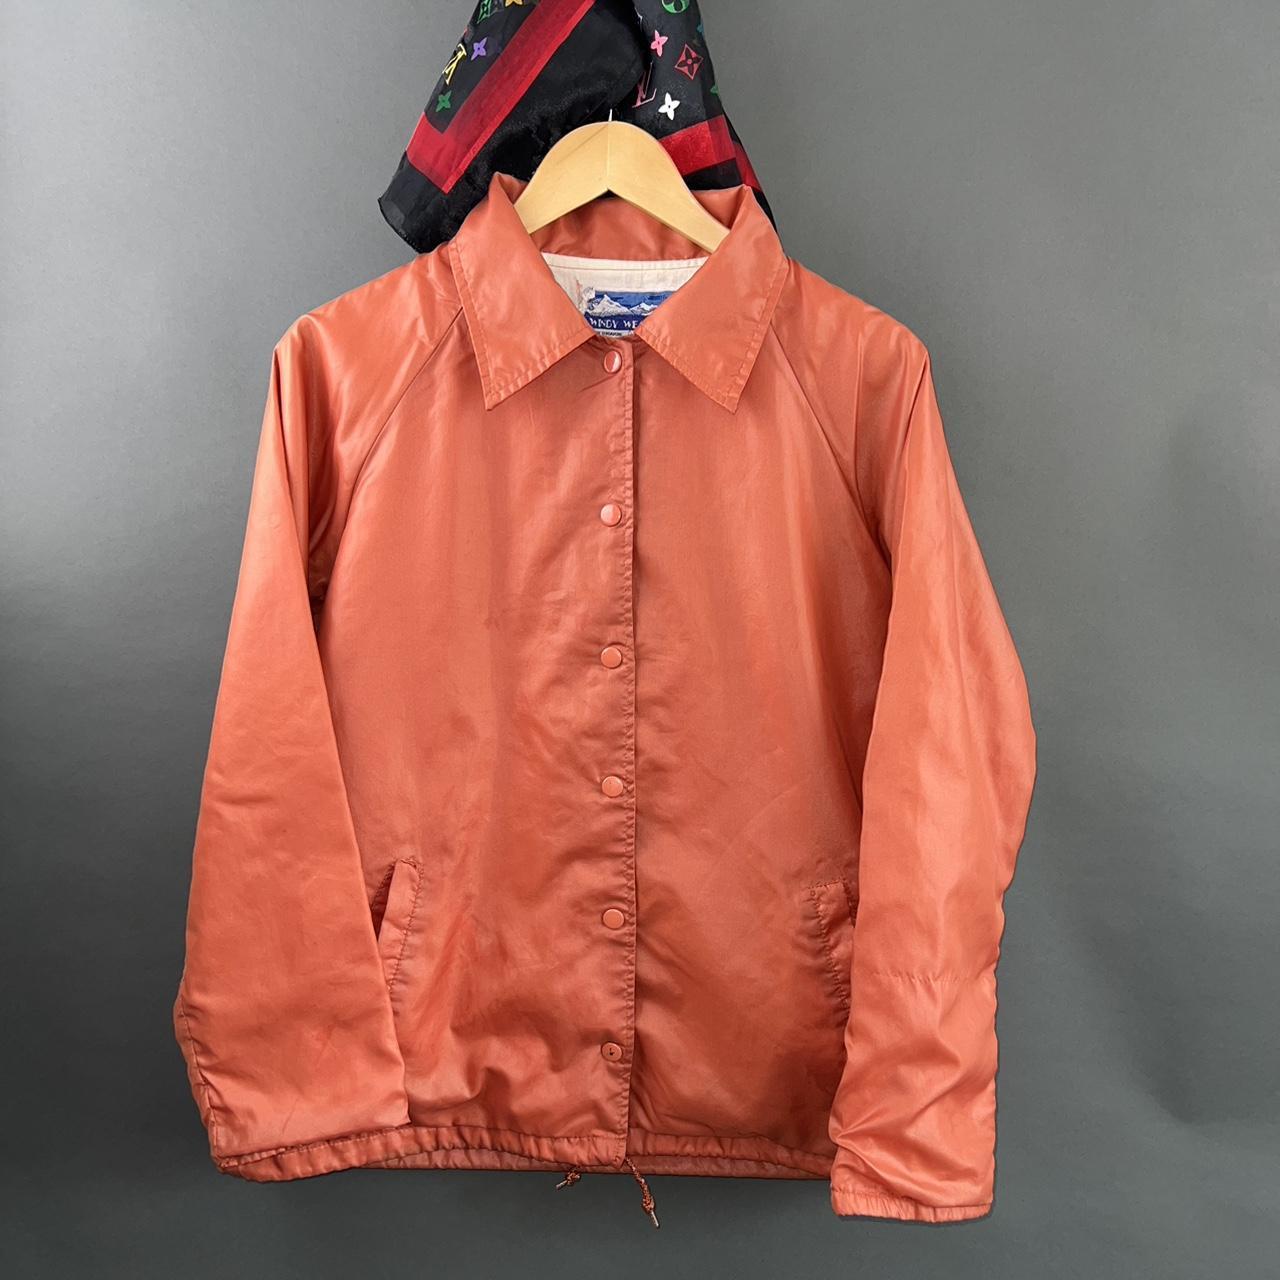 Designer jacket - Depop